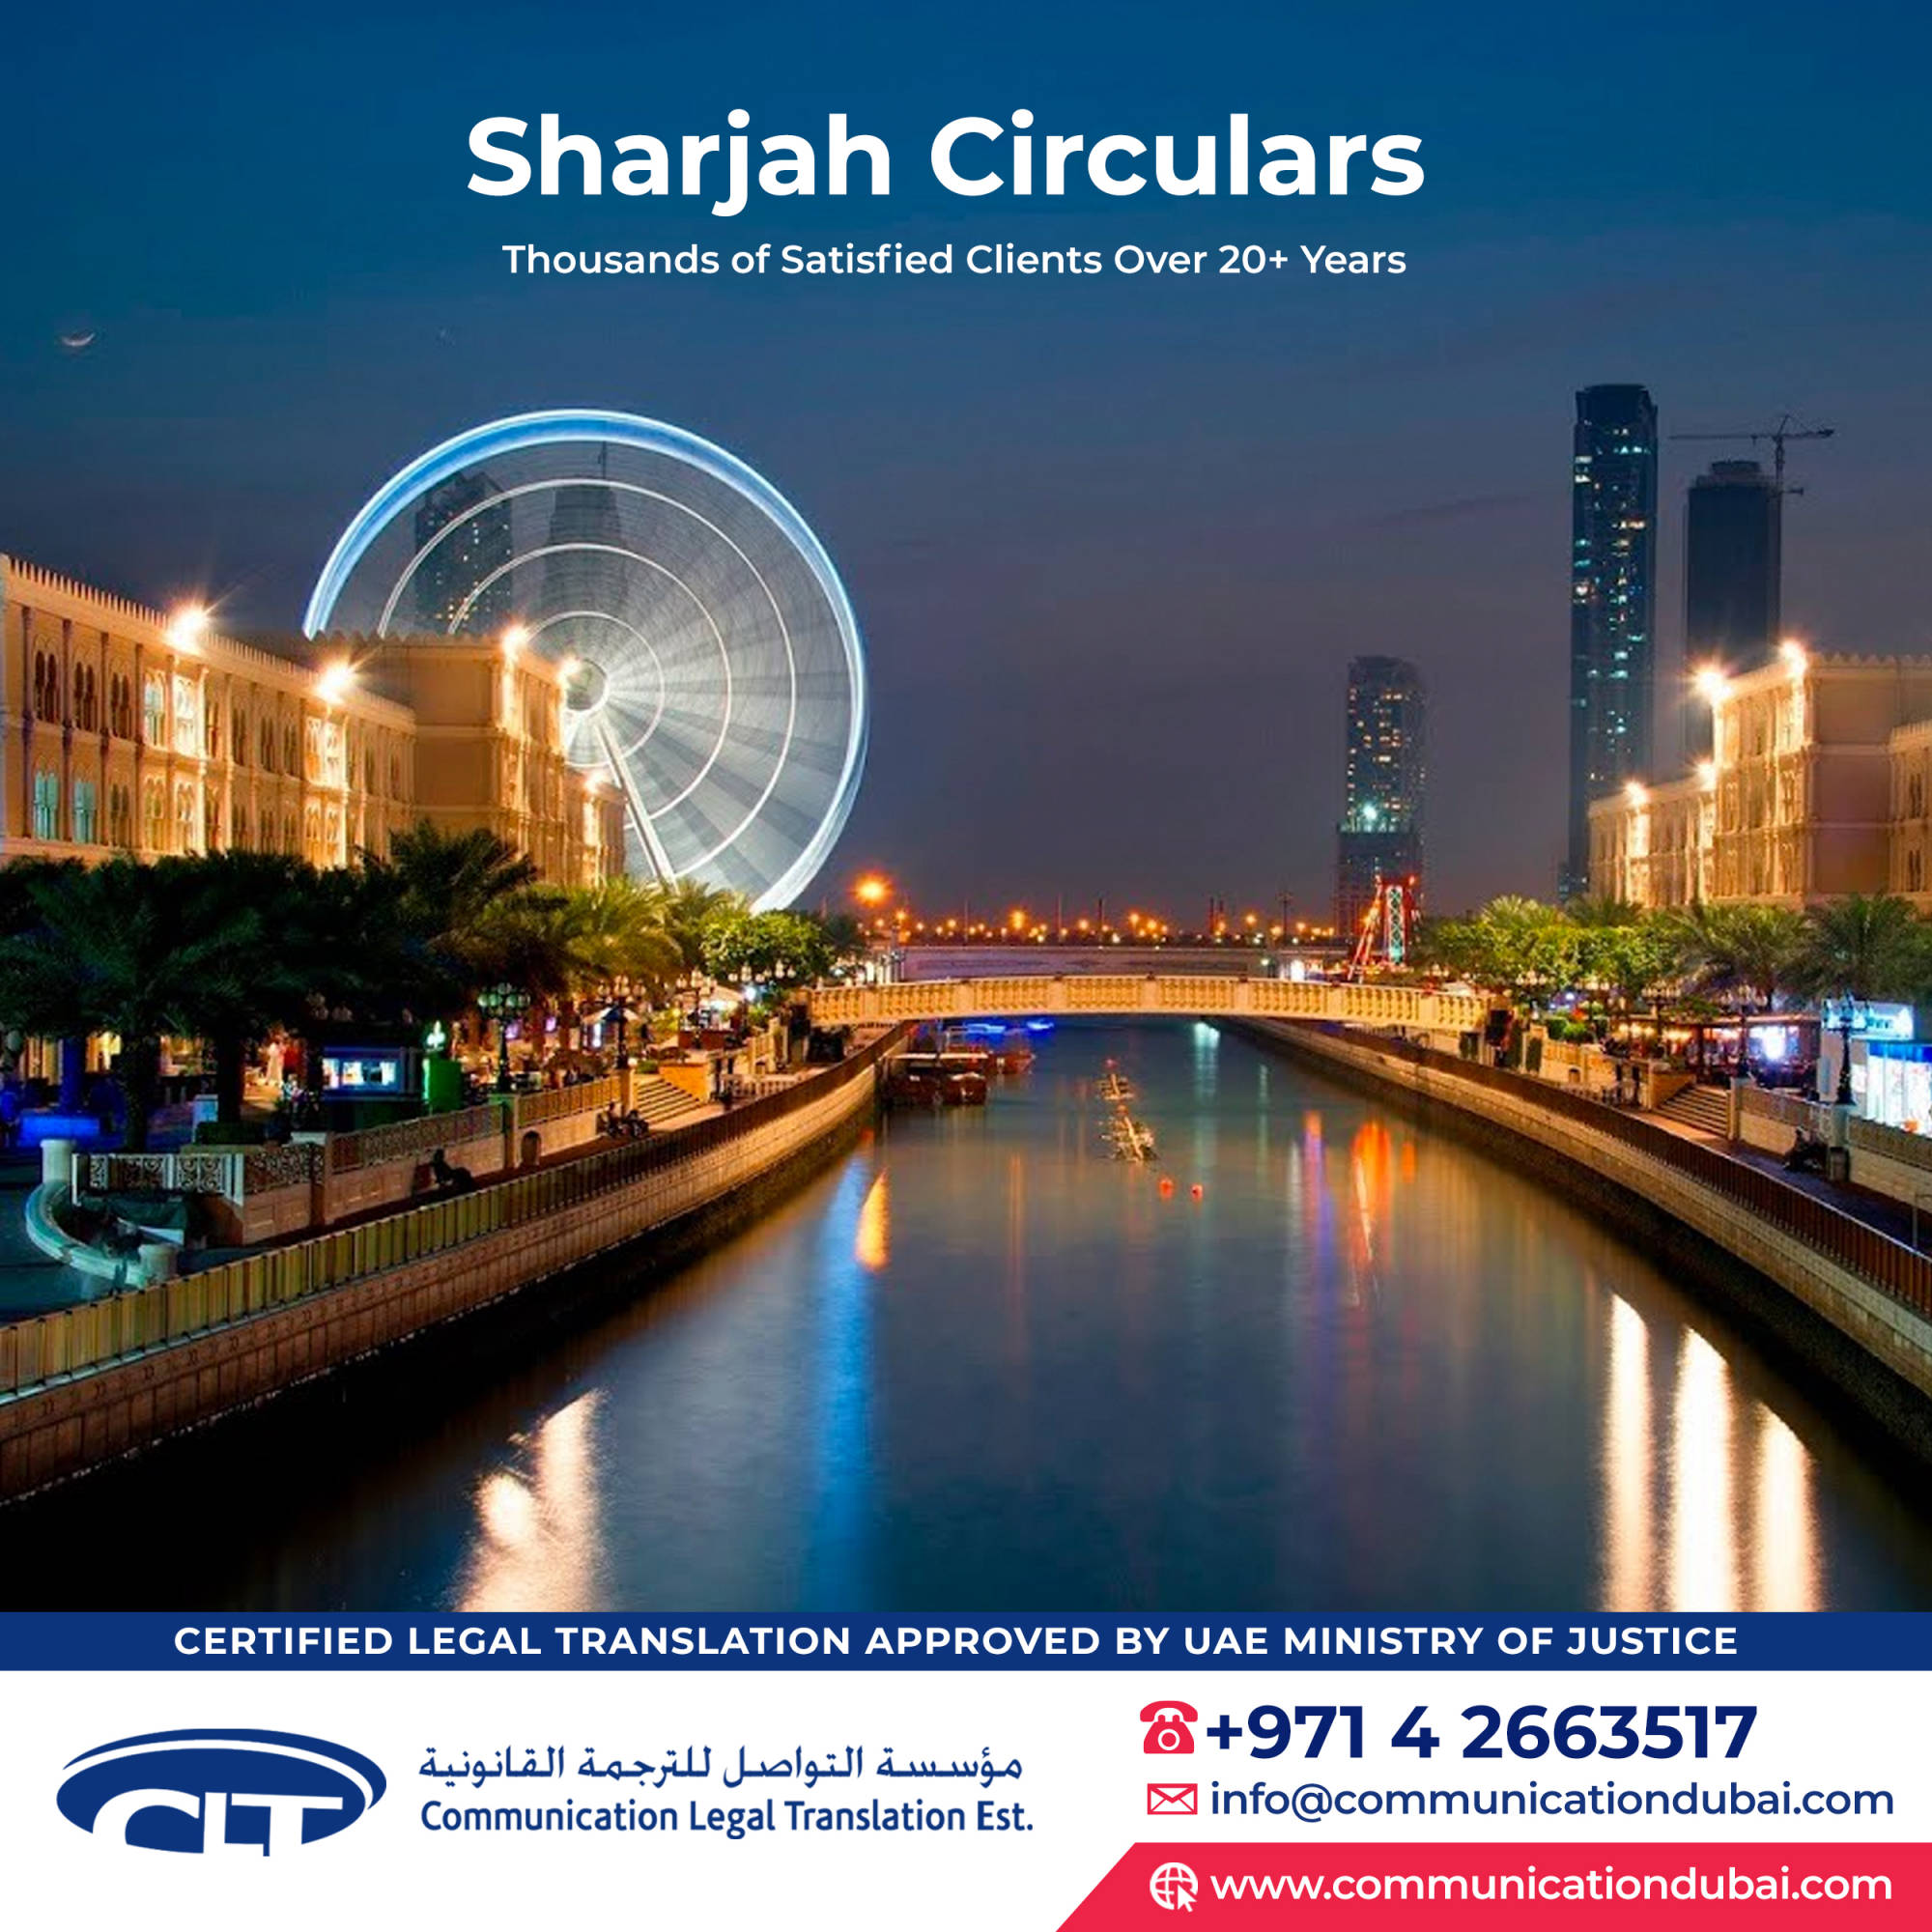 Sharjah Circulars  